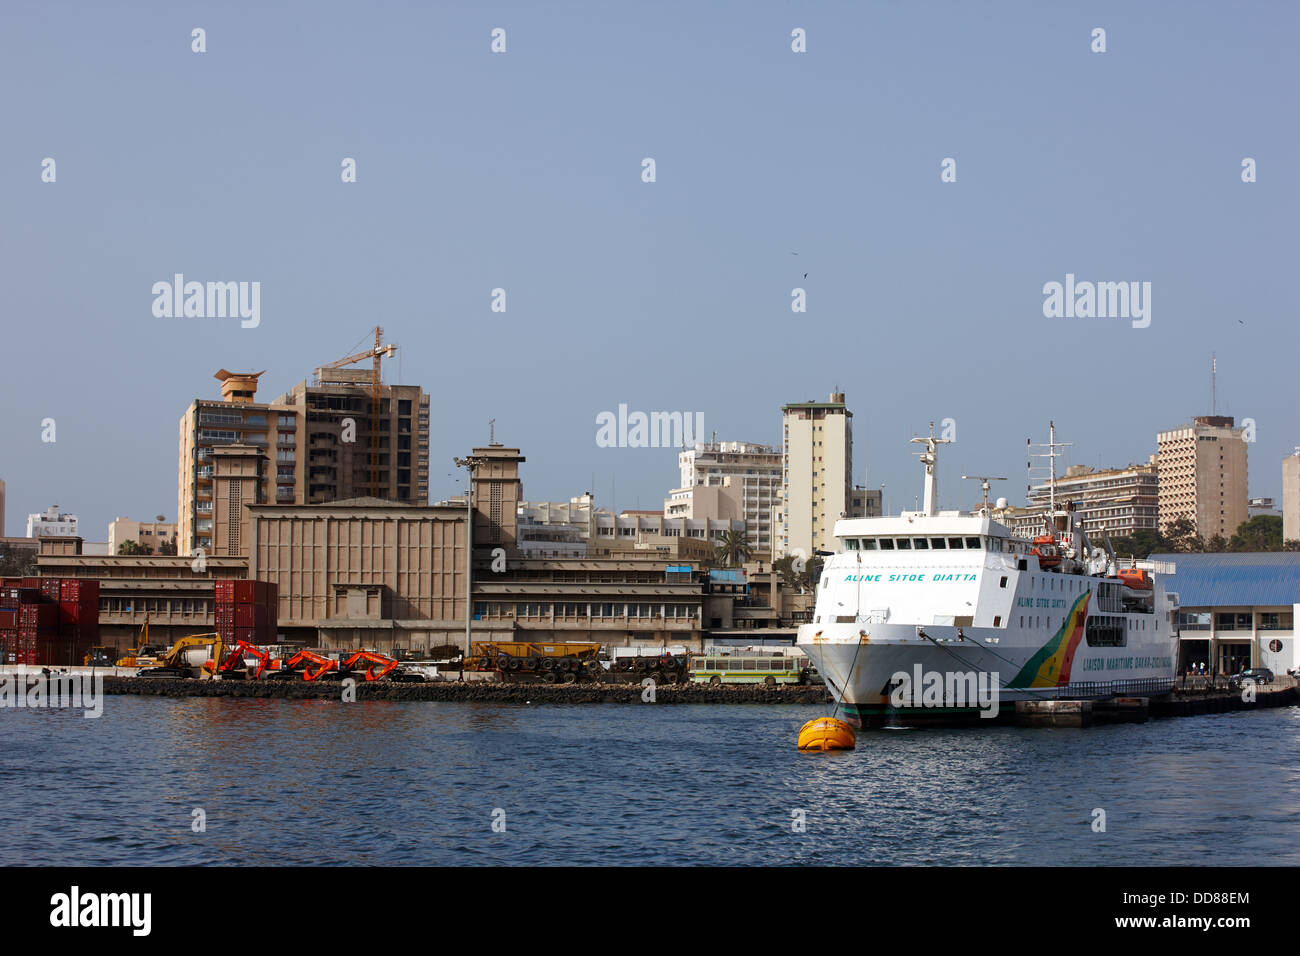 Dakar-Ziguinchor Ferry, Ferry Port, Dakar, Senegal, Africa Stock Photo